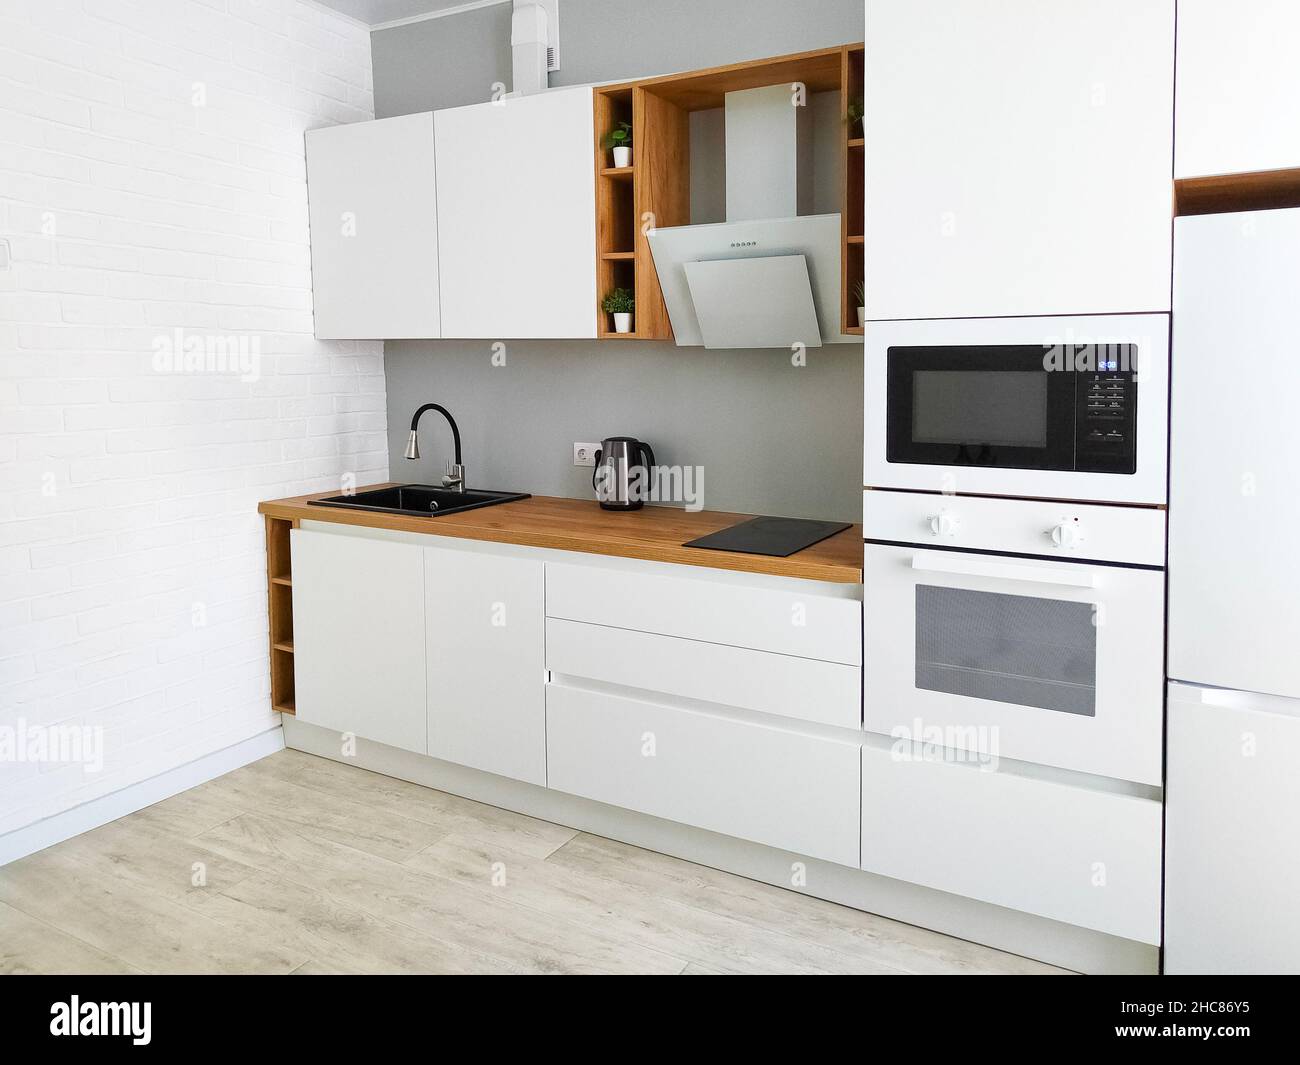 Weiße Küche skandinavische Innenausstattung mit Dunstabzugshaube auf  Holzarbeitspelette Stockfotografie - Alamy